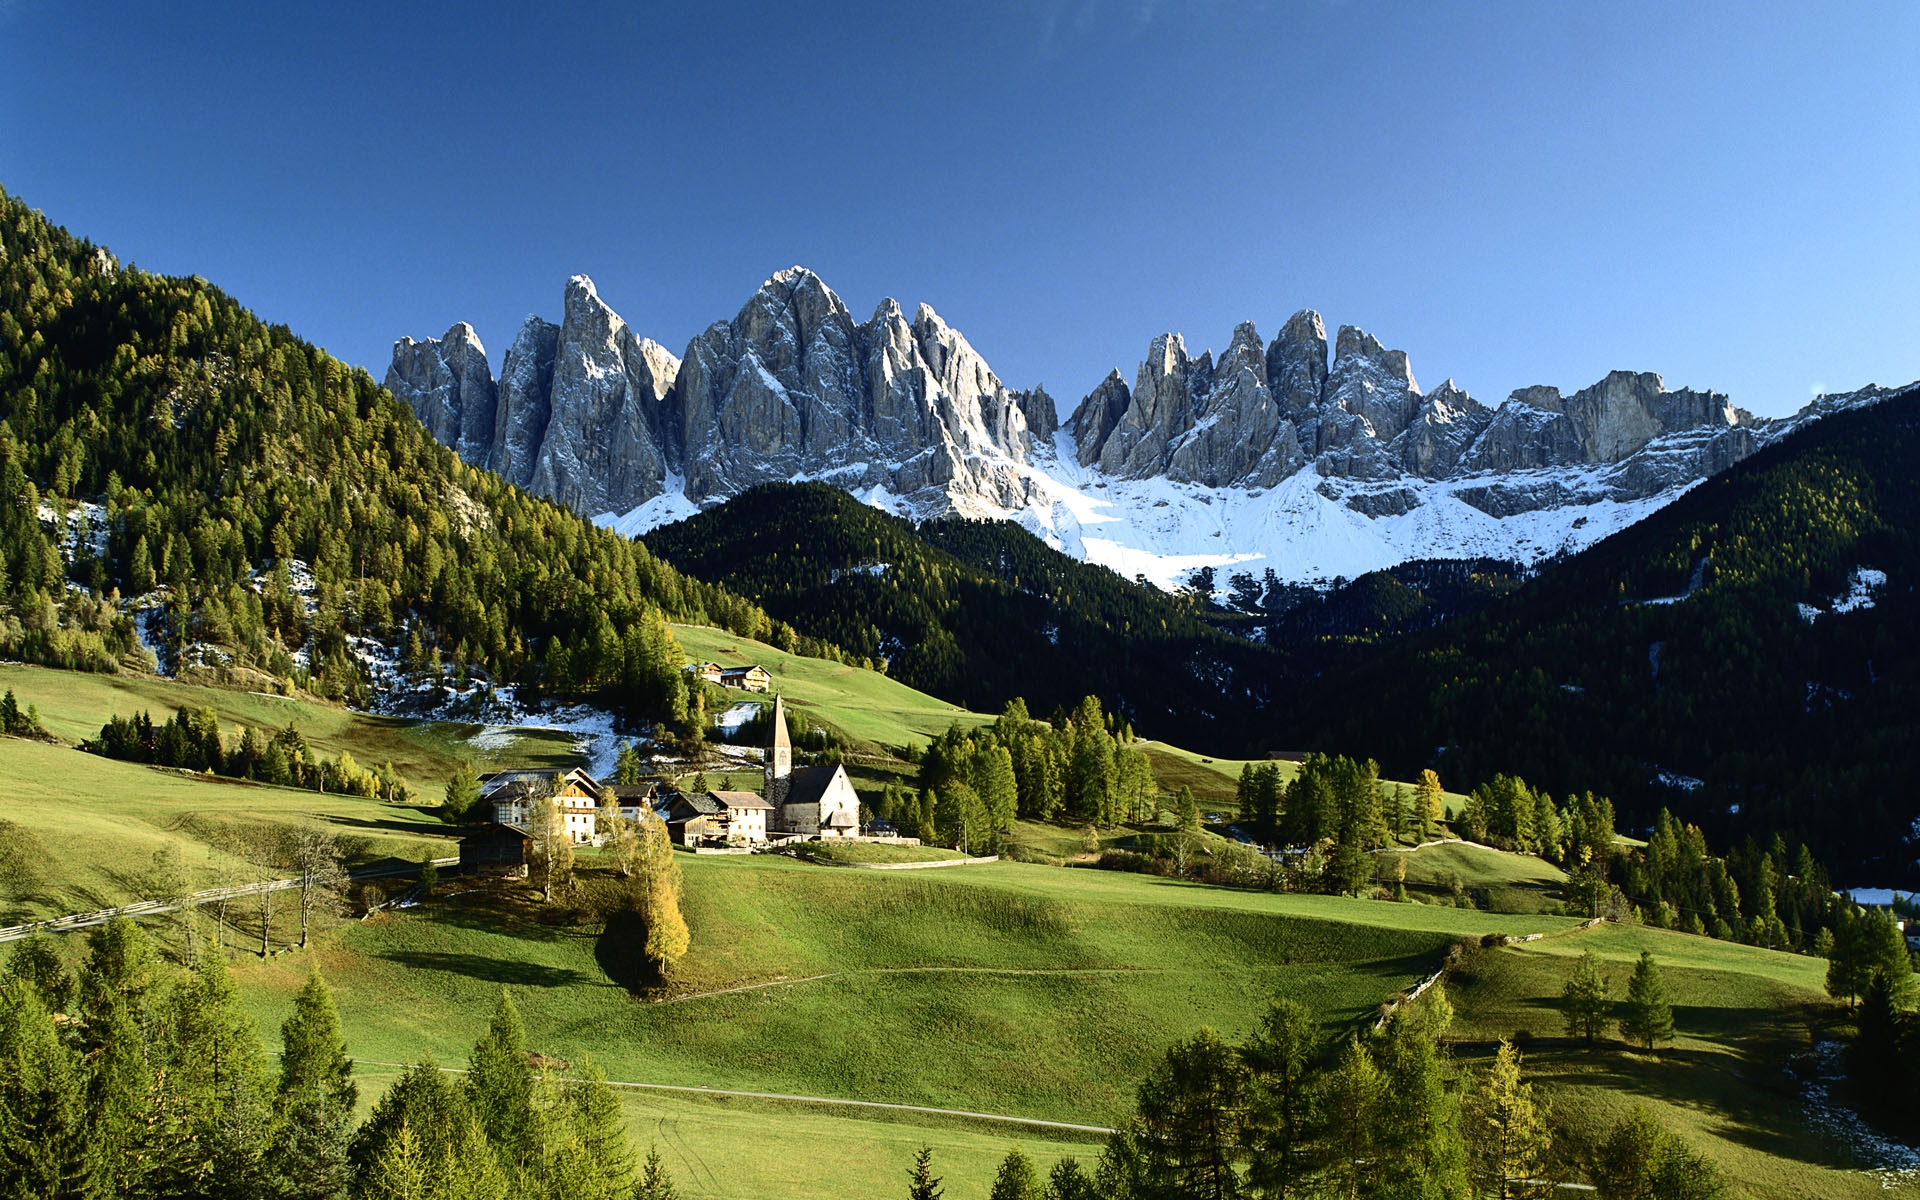 Hintergrundbilder Beschreibung Italienische Landschaft